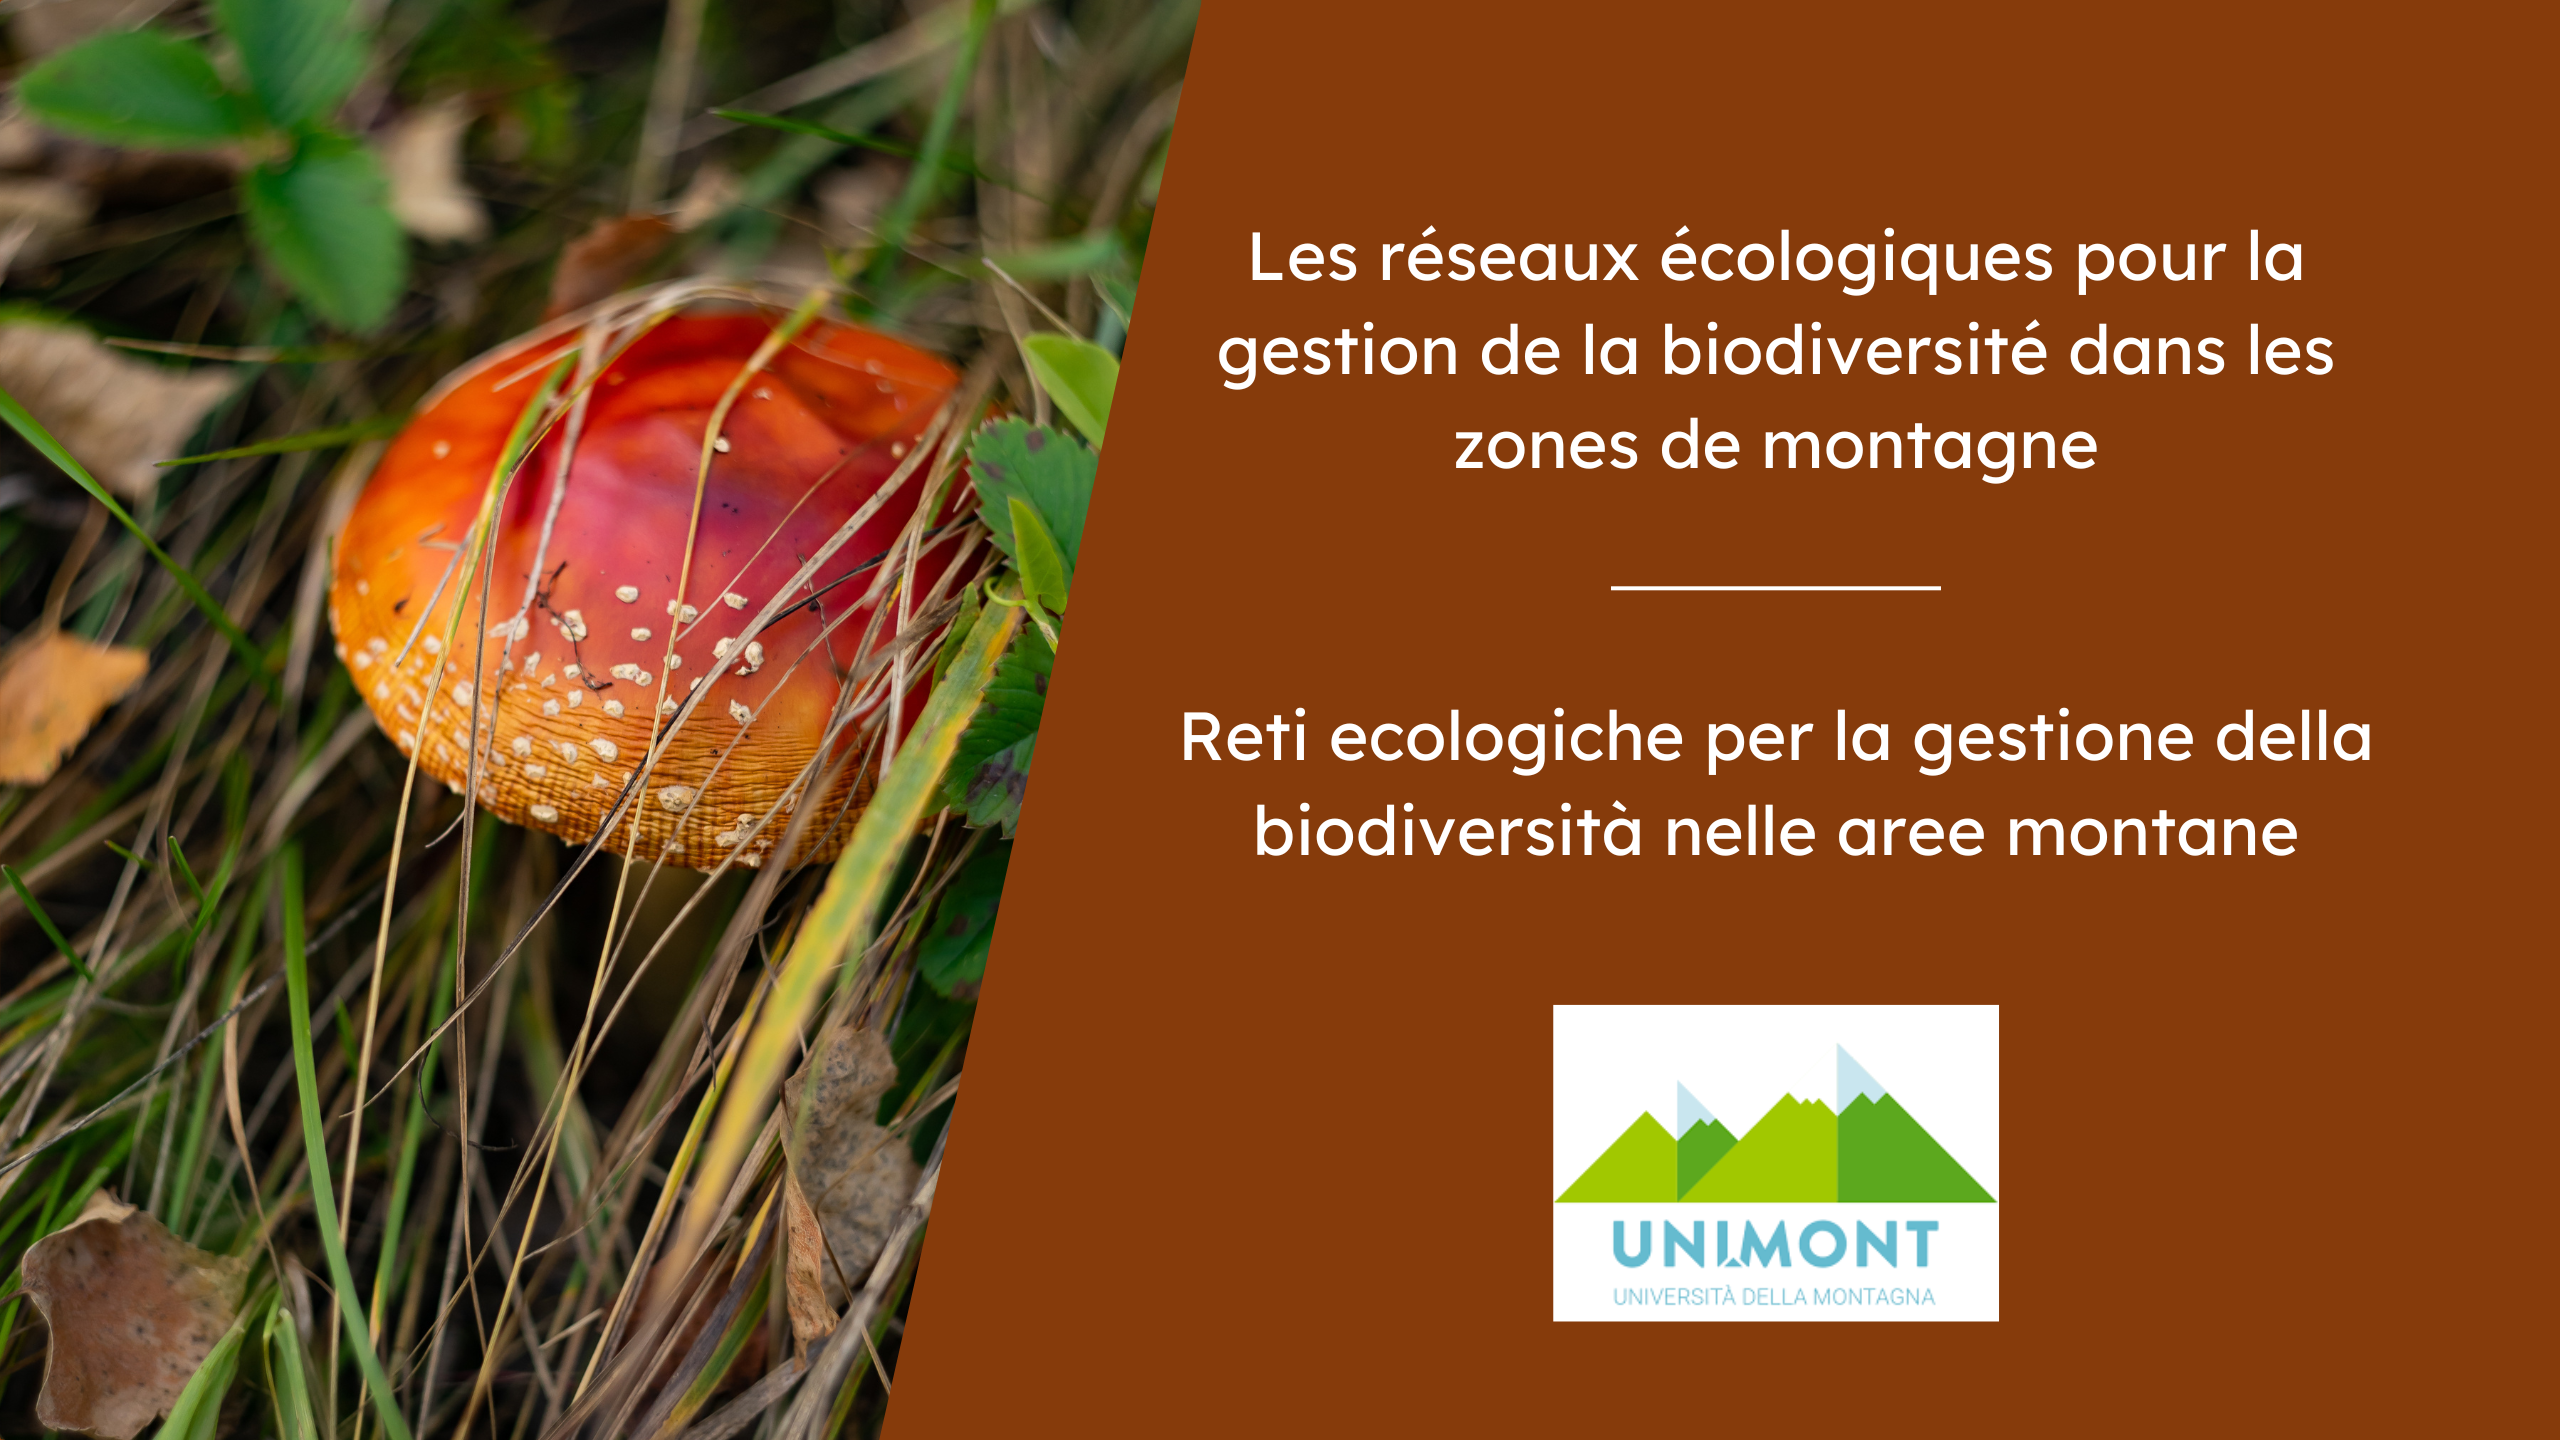 Les réseaux écologiques pour la gestion de la biodiversité dans les zones de montagne